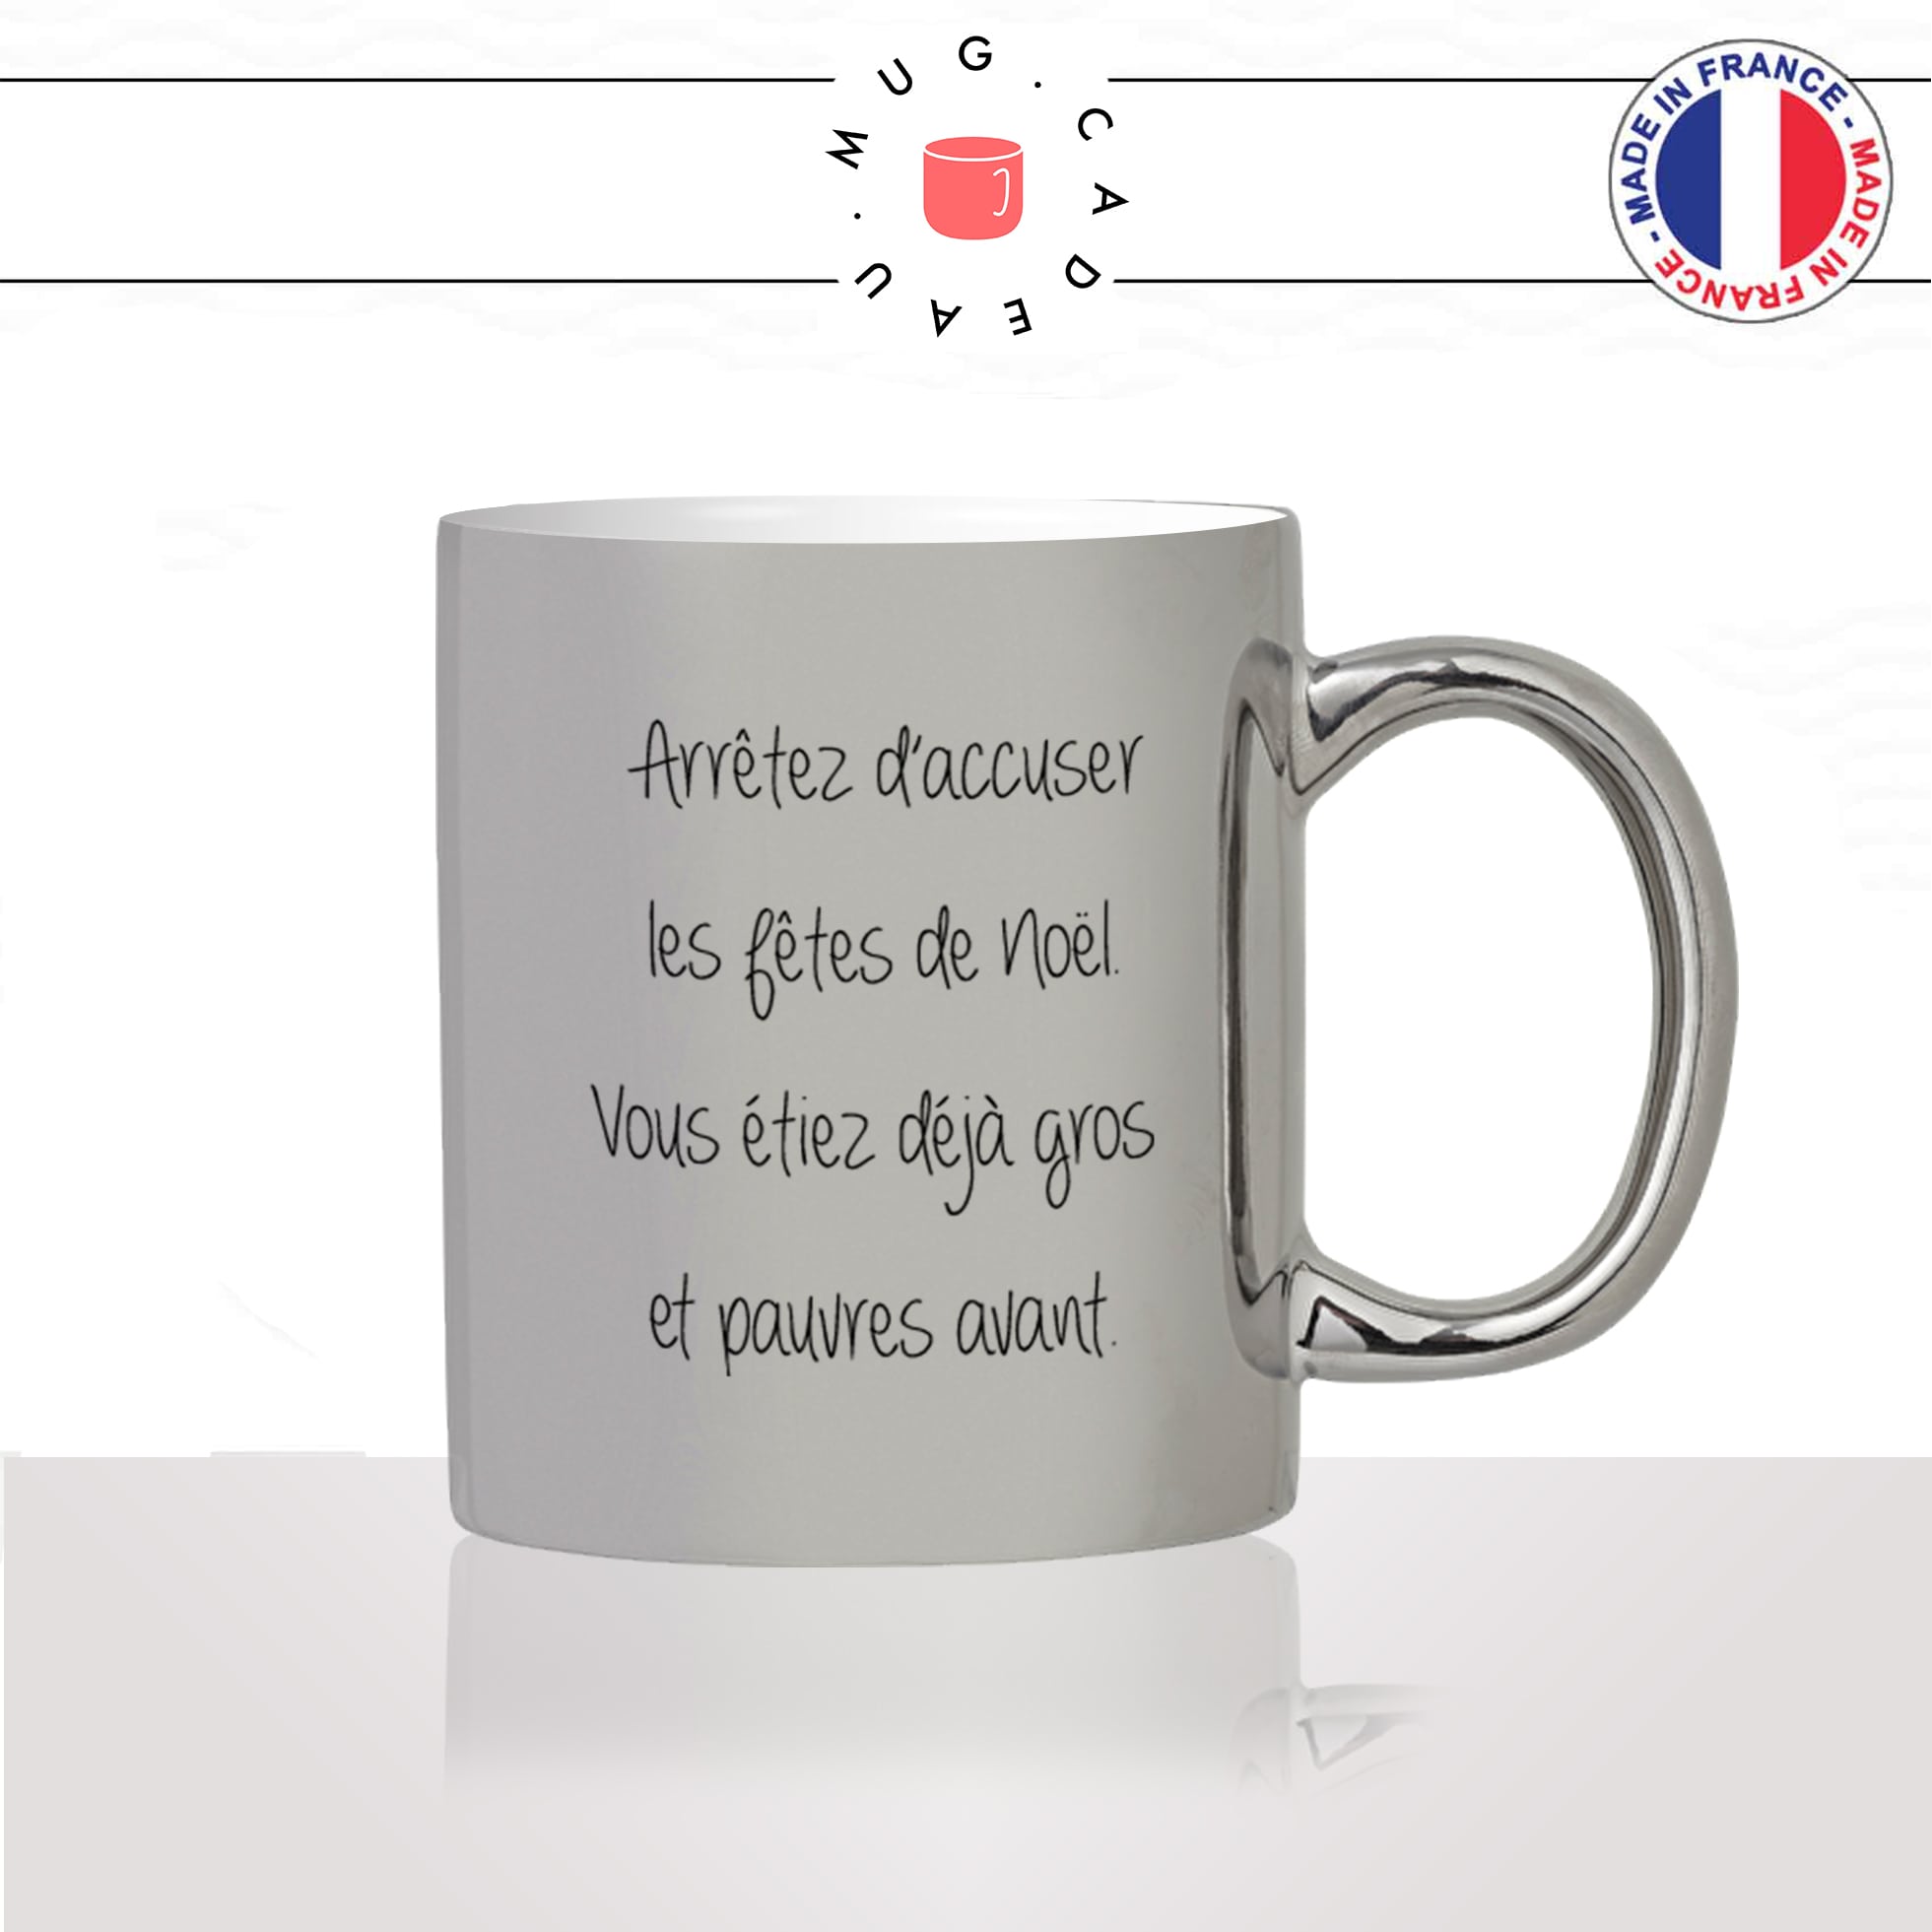 mug-tasse-argent-argenté-silver-fetes-de-noel-gros-pauvres-cadeau-repas-regime-francaise-humour-cons-idée-cadeau-fun-cool-café-thé-original2-min